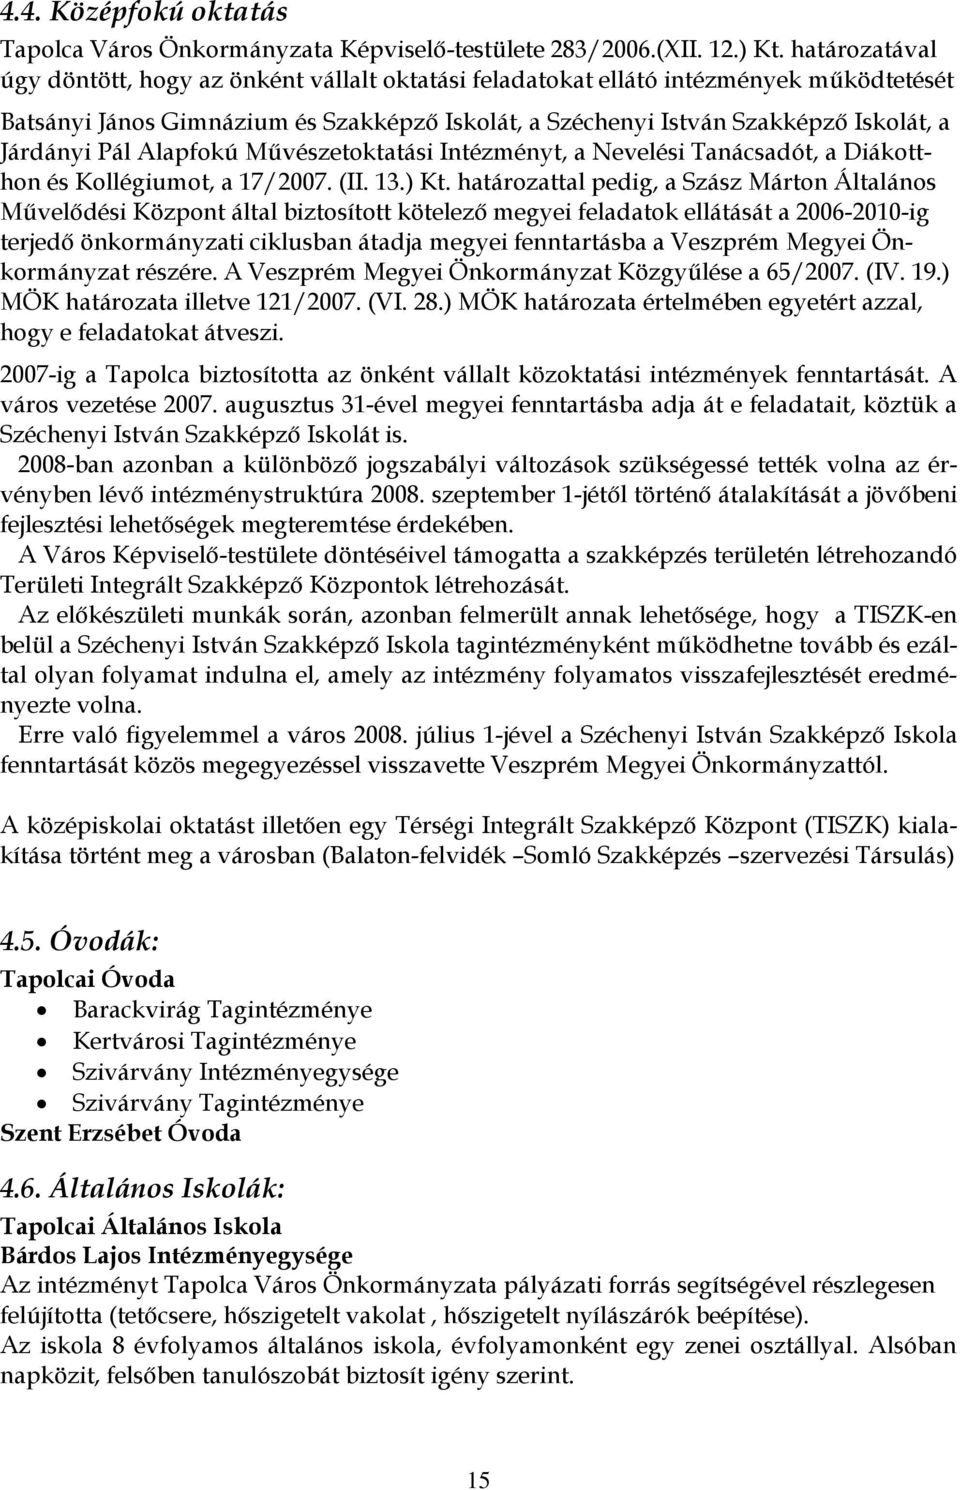 Pál Alapfokú Művészetoktatási Intézményt, a Nevelési Tanácsadót, a Diákotthon és Kollégiumot, a 17/2007. (II. 13.) Kt.